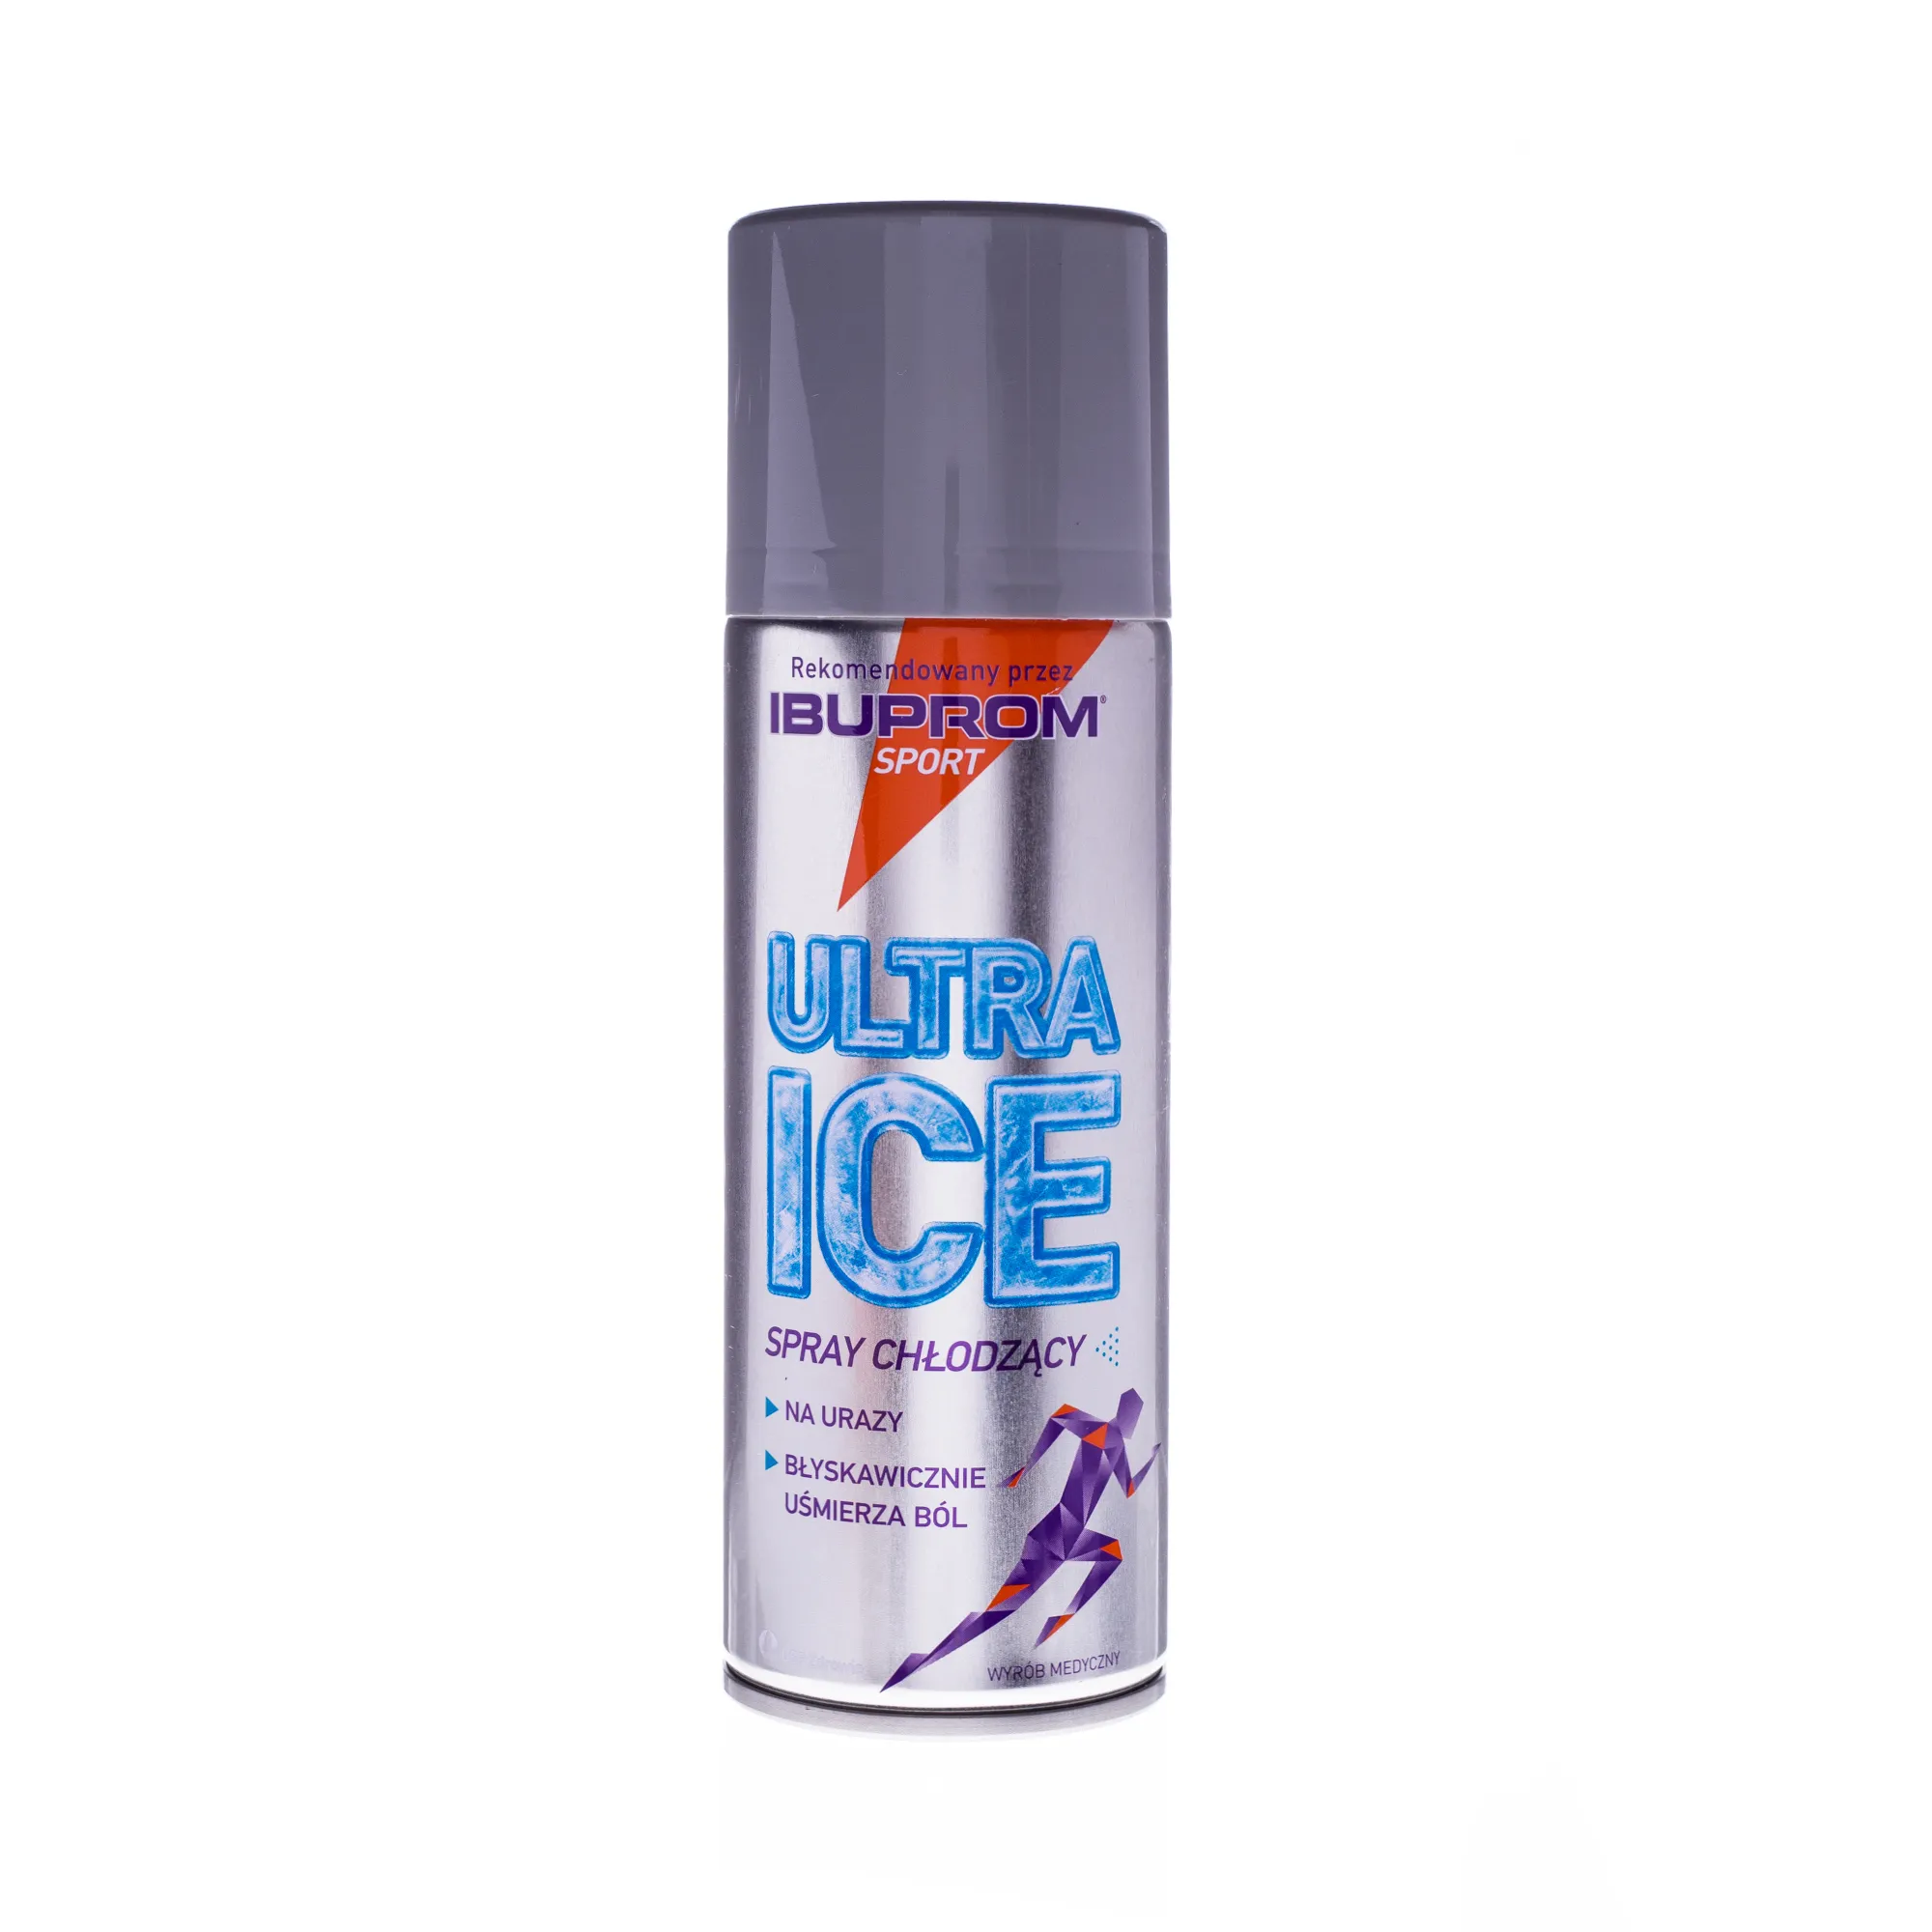 Ultra Ice, spray chłodzący na urazy, 200 ml